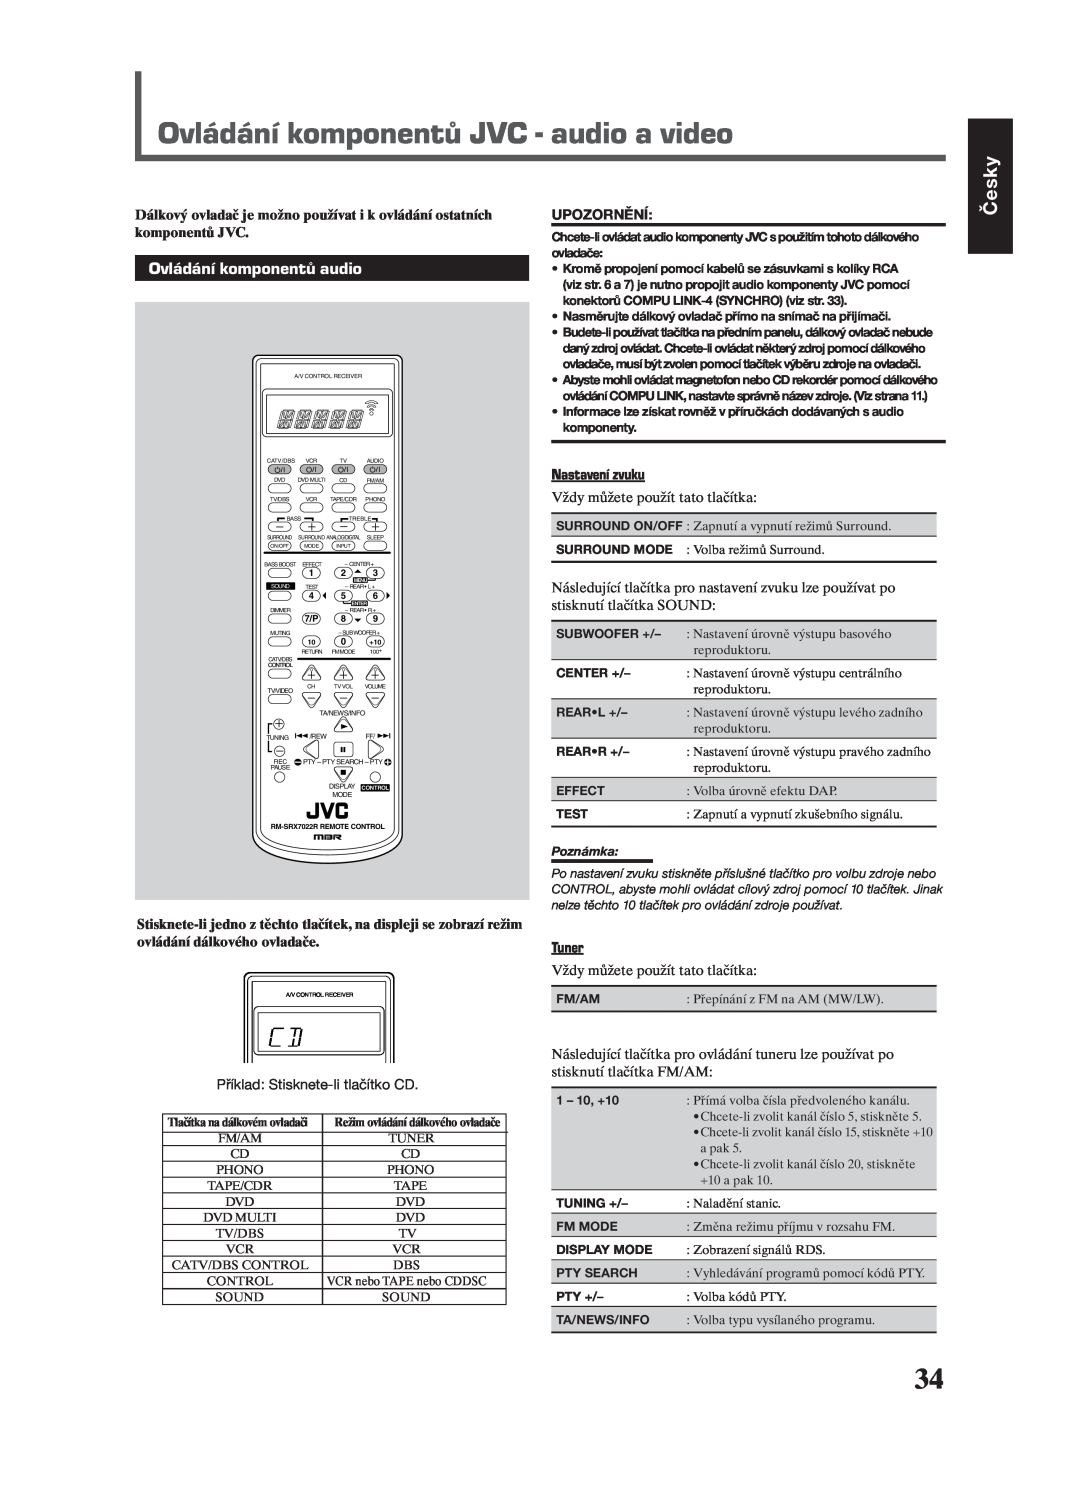 JVC RX-7022RSL manual Ovládání komponentů JVC - audio a video, Ovládání komponentů audio, Česky, Nastavení zvuku, Tuner 